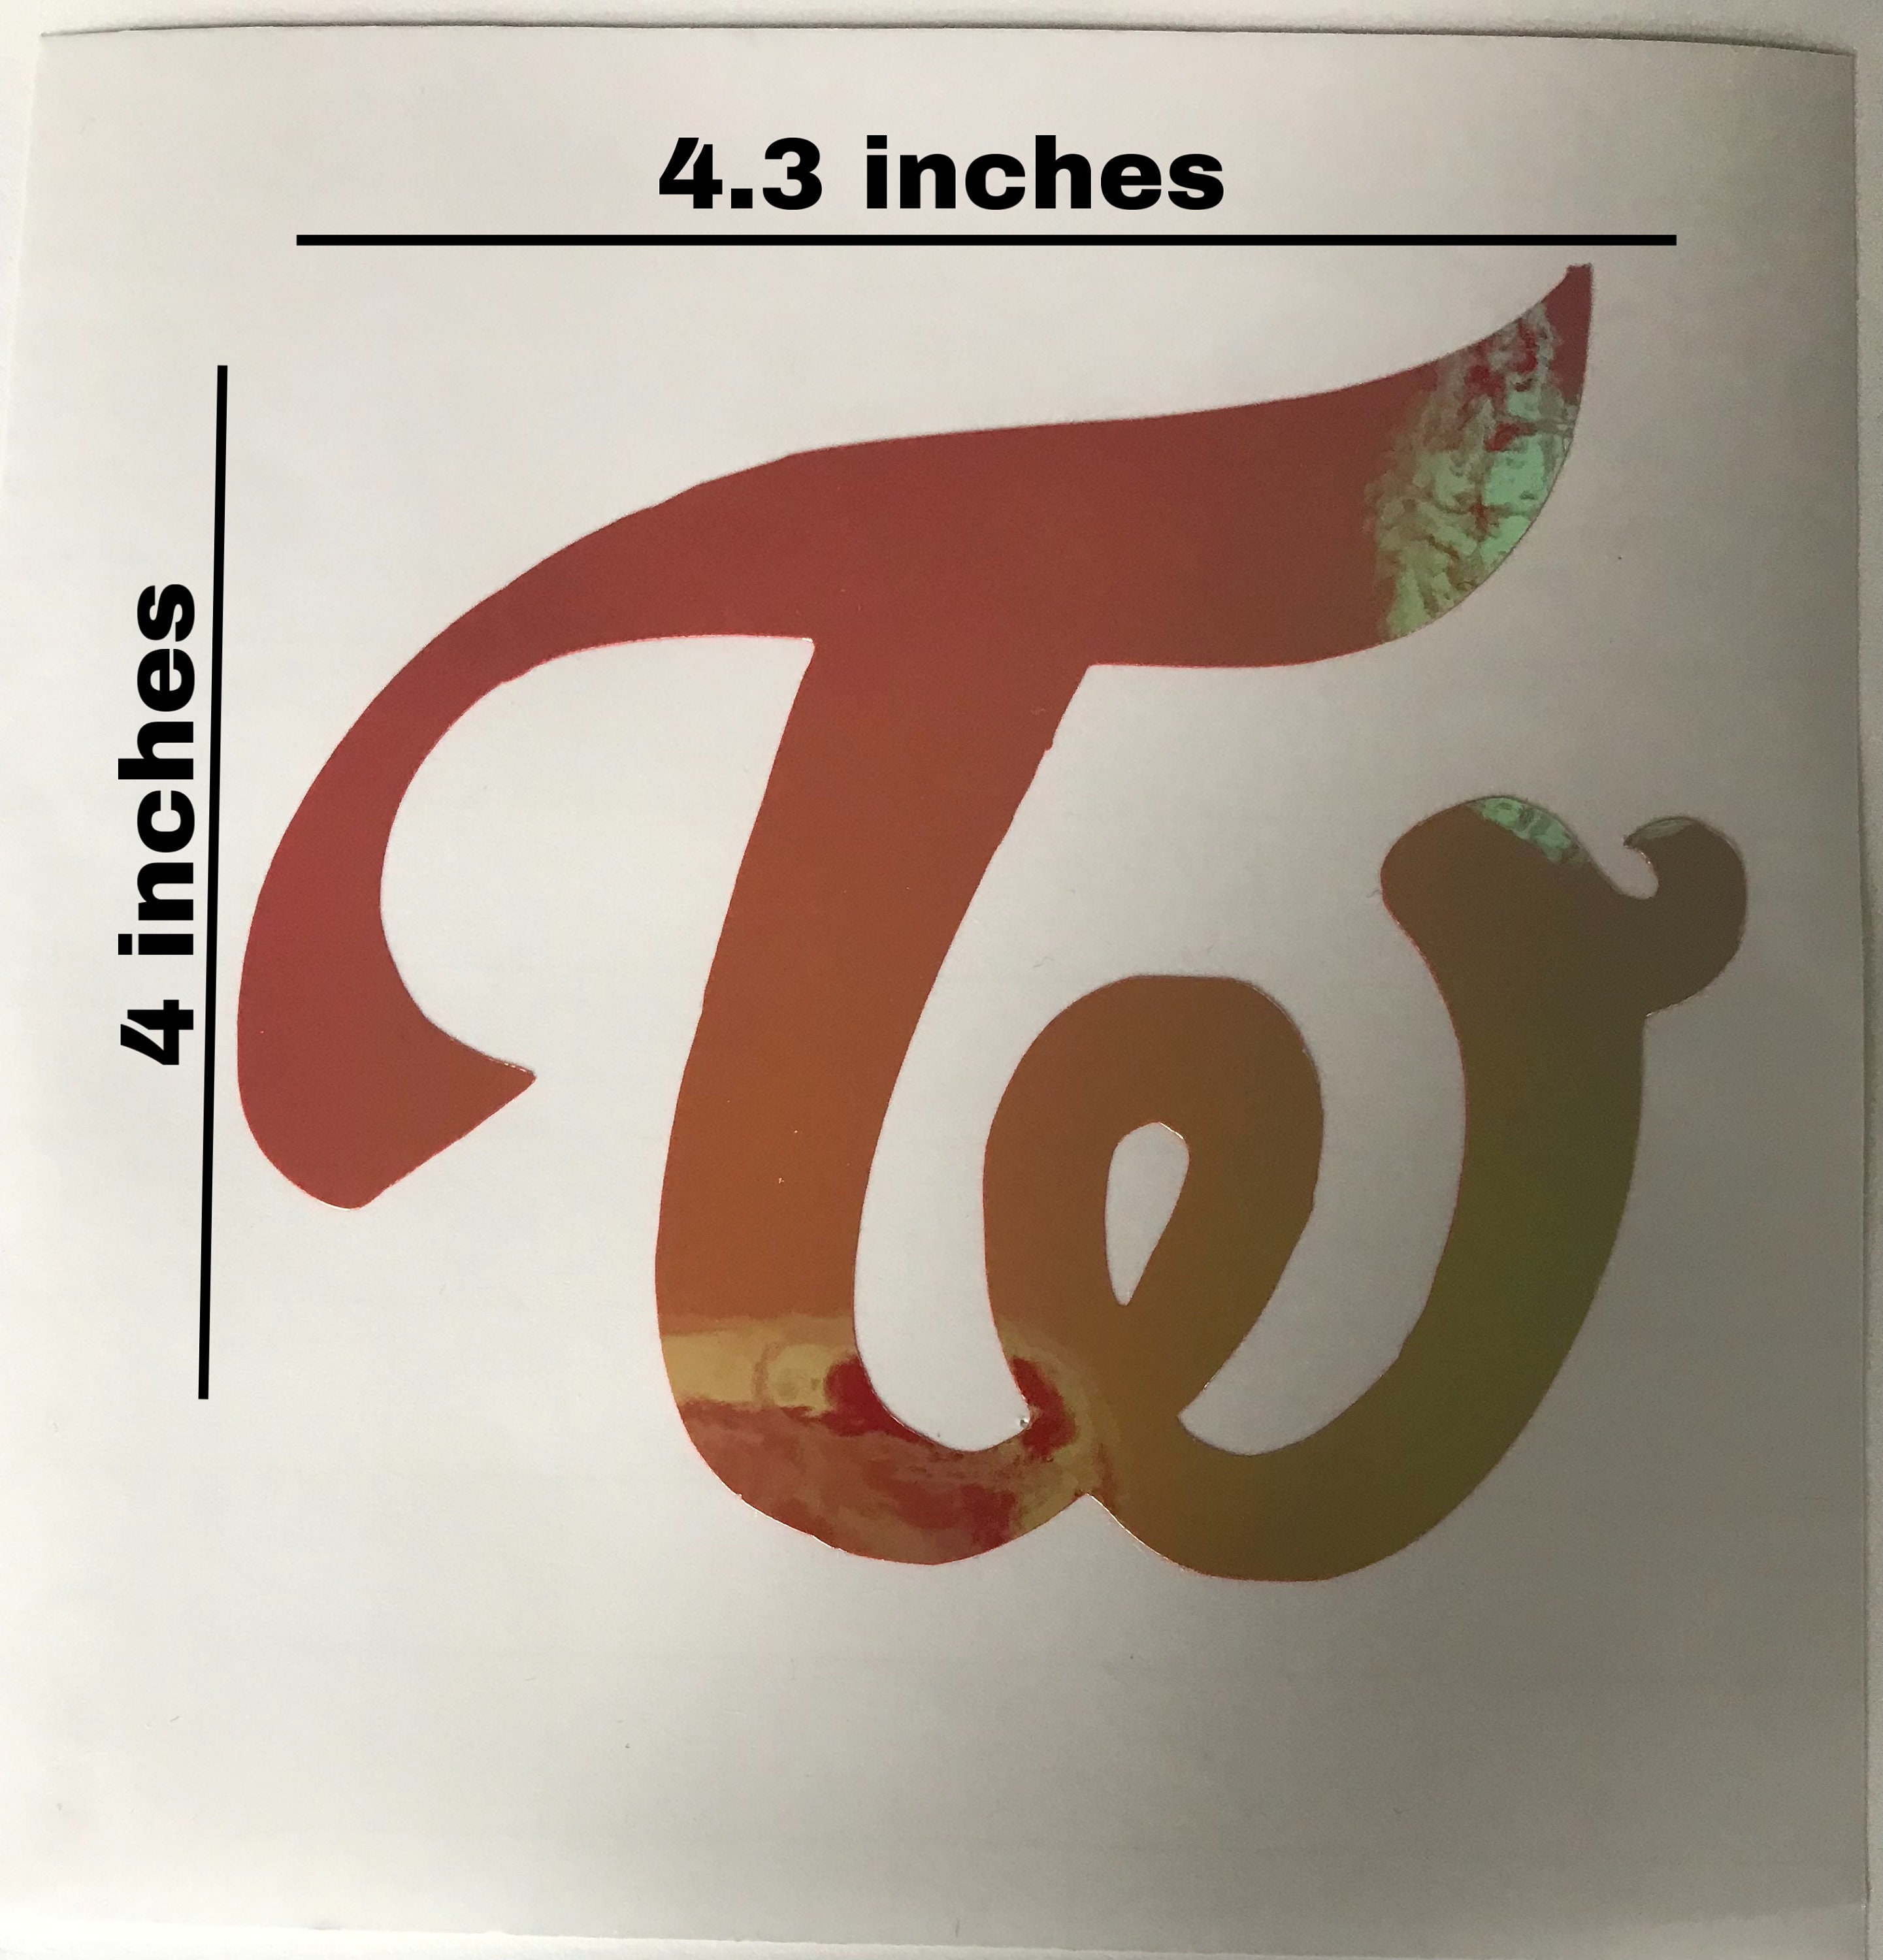 Twice Logo Stickers for Sale